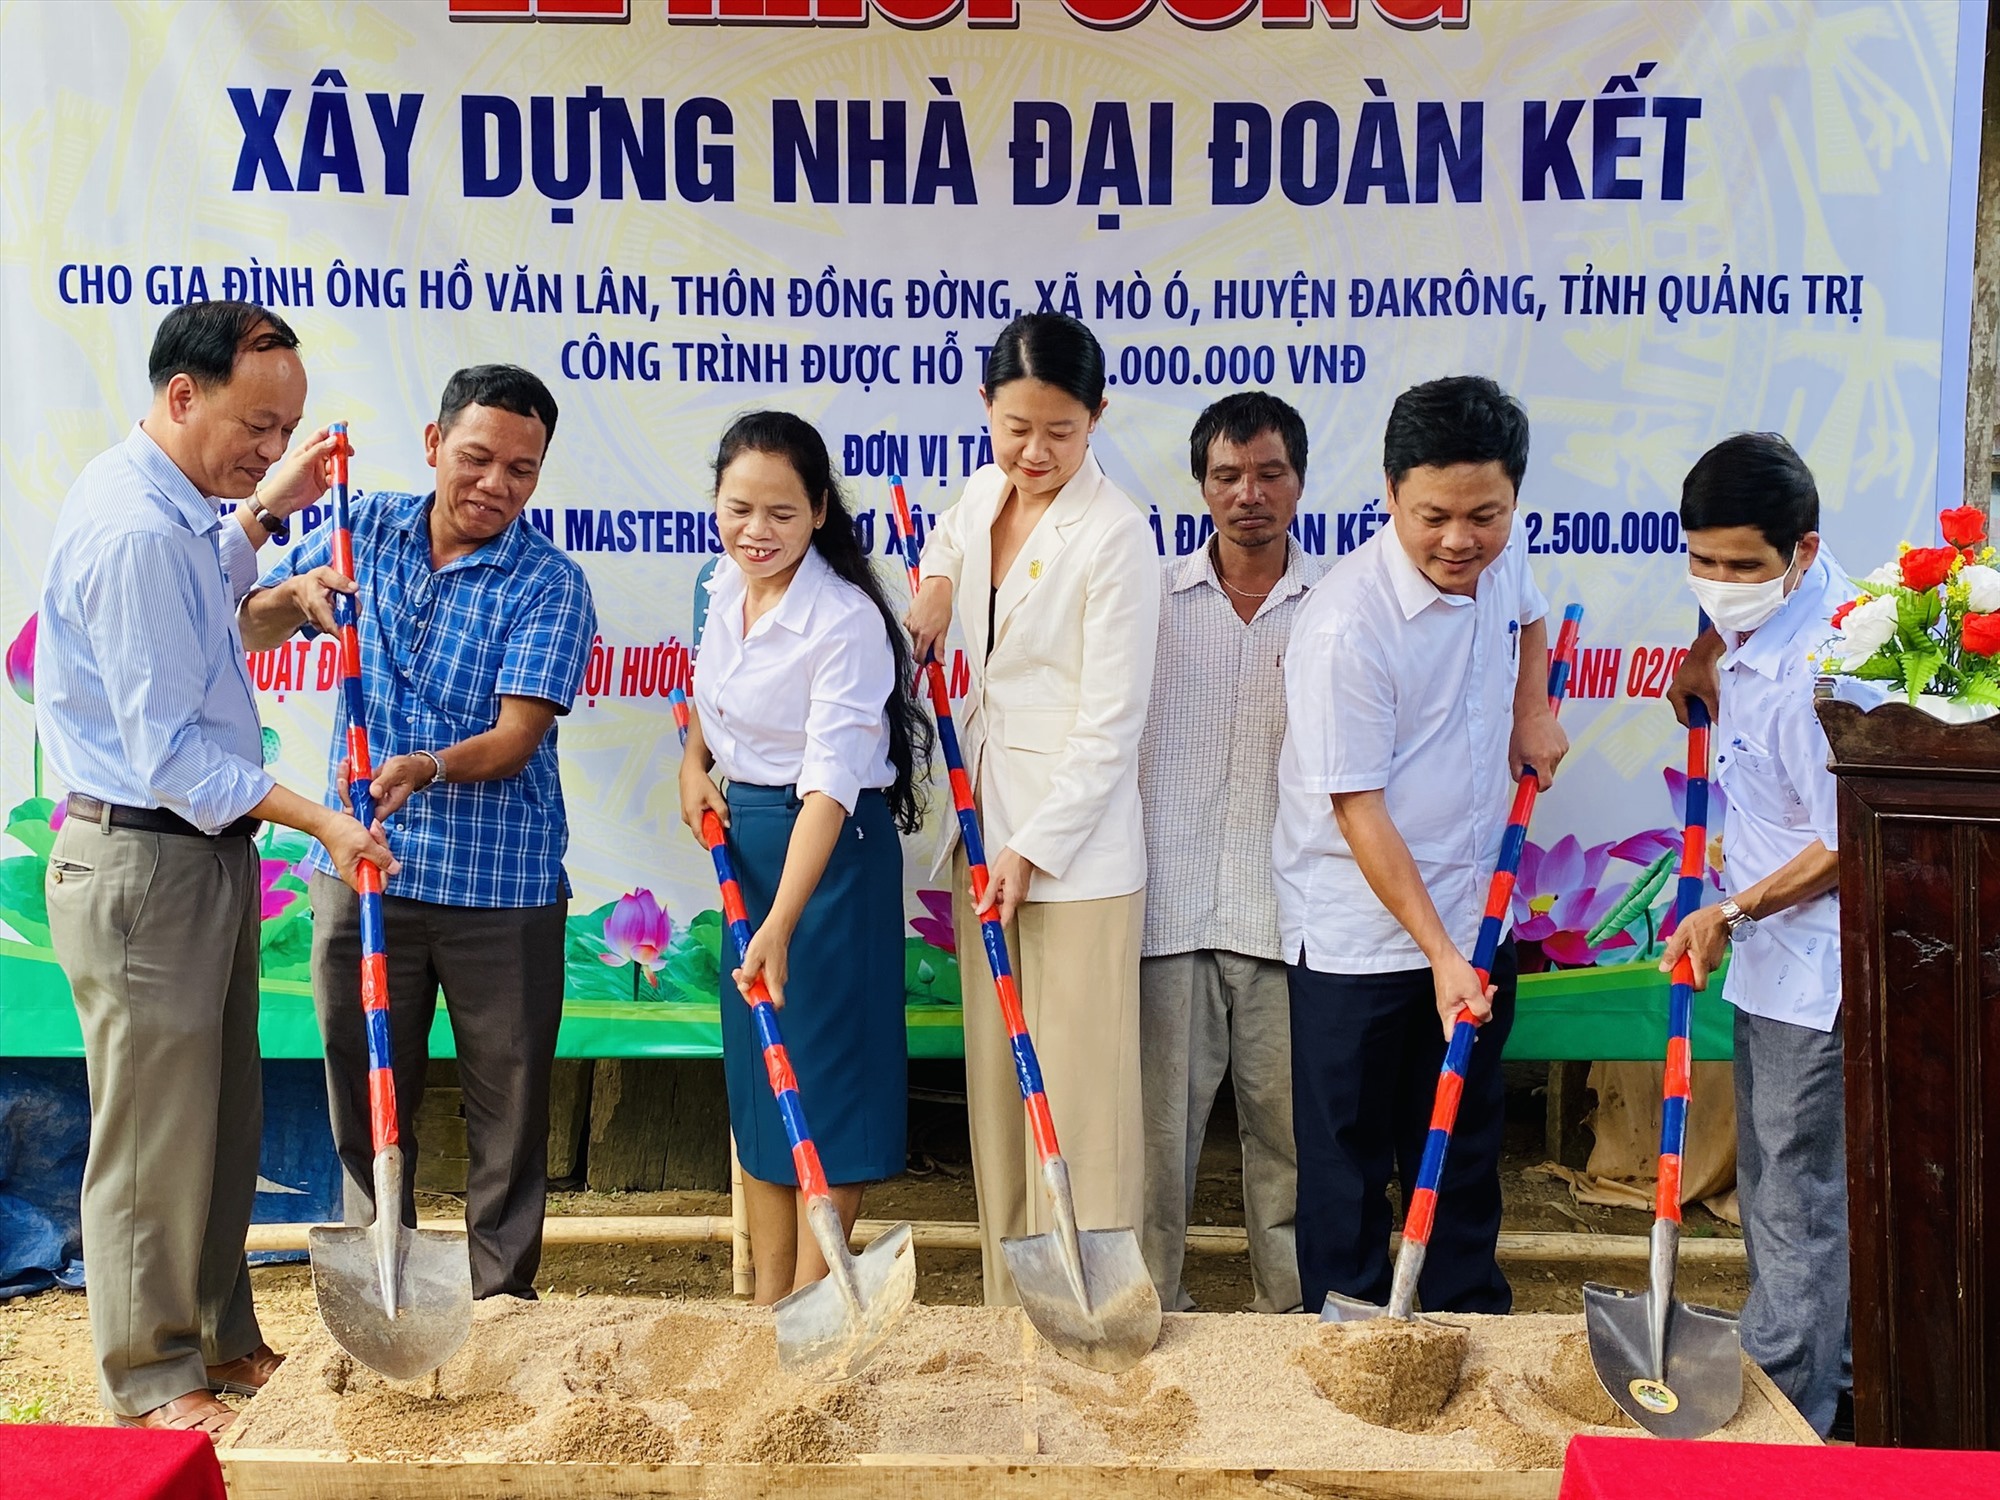 Khởi công xây dựng nhà Đại đoàn kết cho ông Hồ Văn Lân, ở xã Mò Ó, huyện Đakrông - Ảnh: T.P